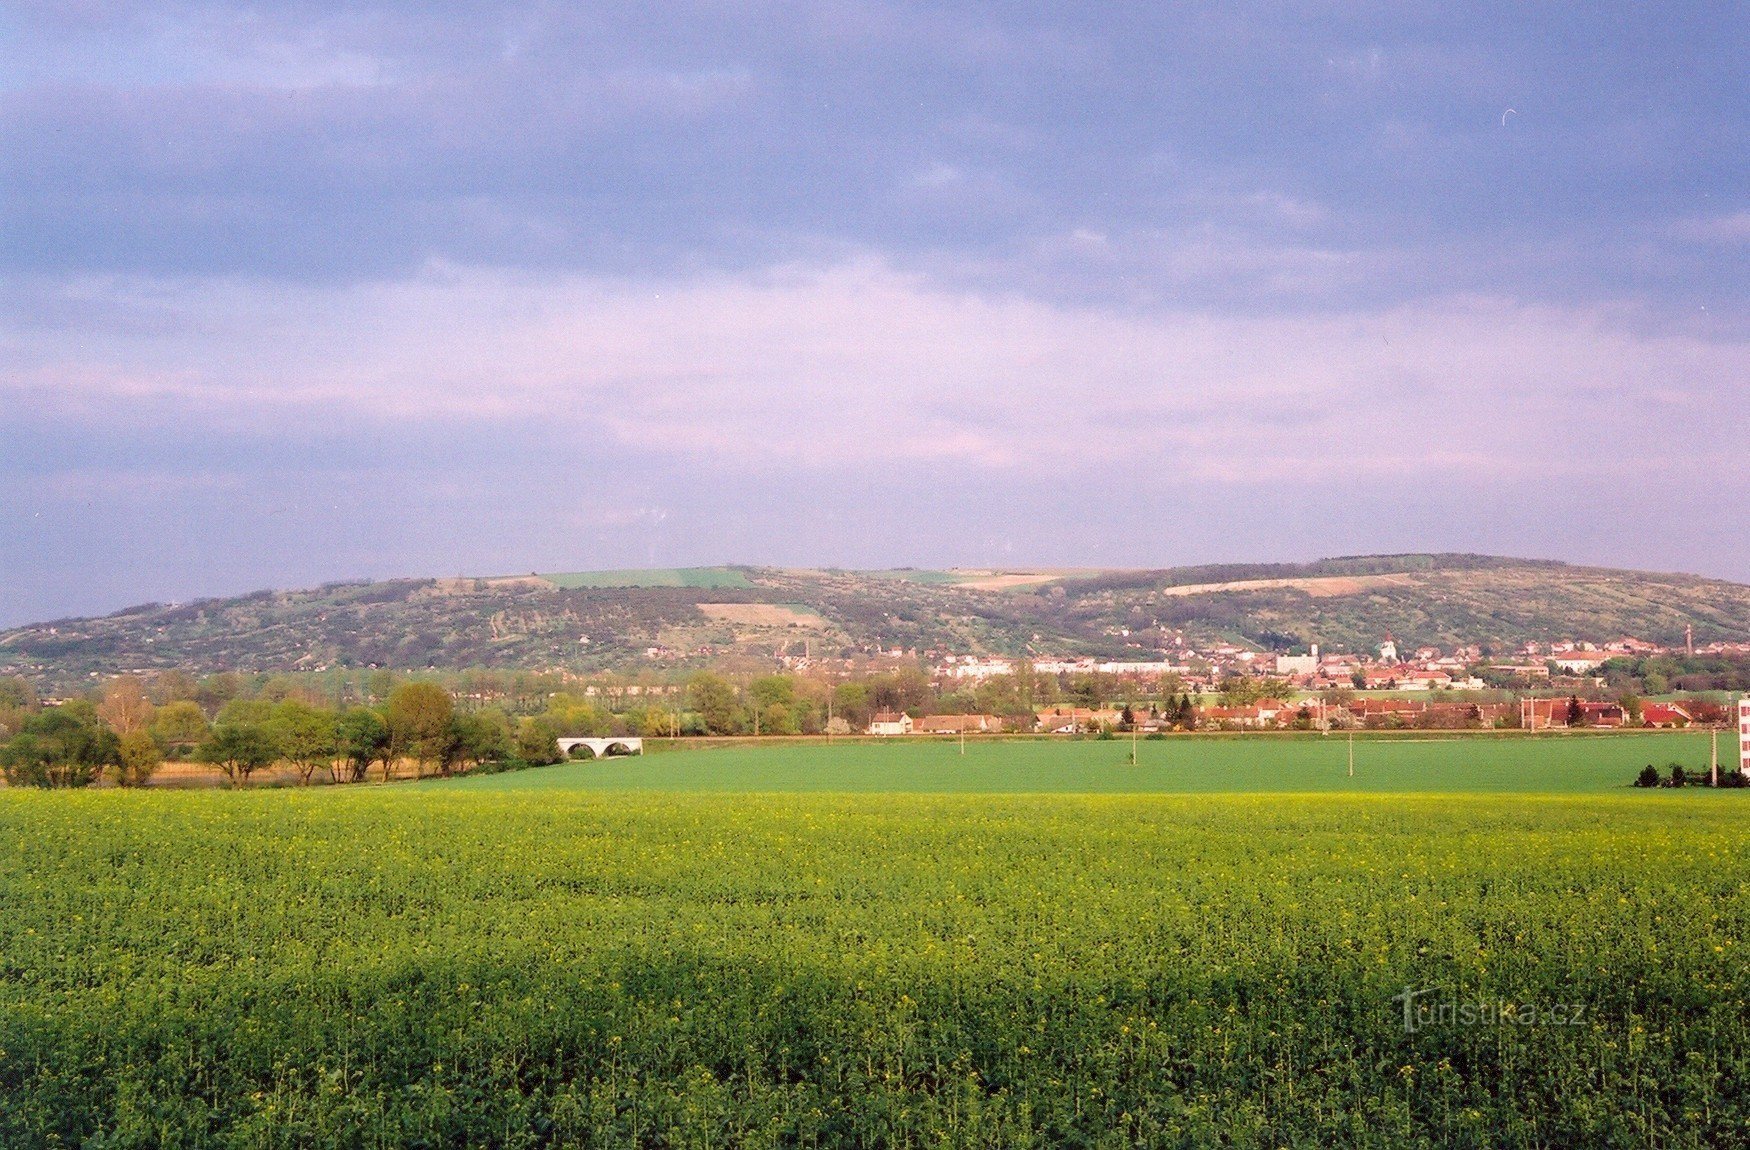 Výhon hill from the hill above Hrušovany